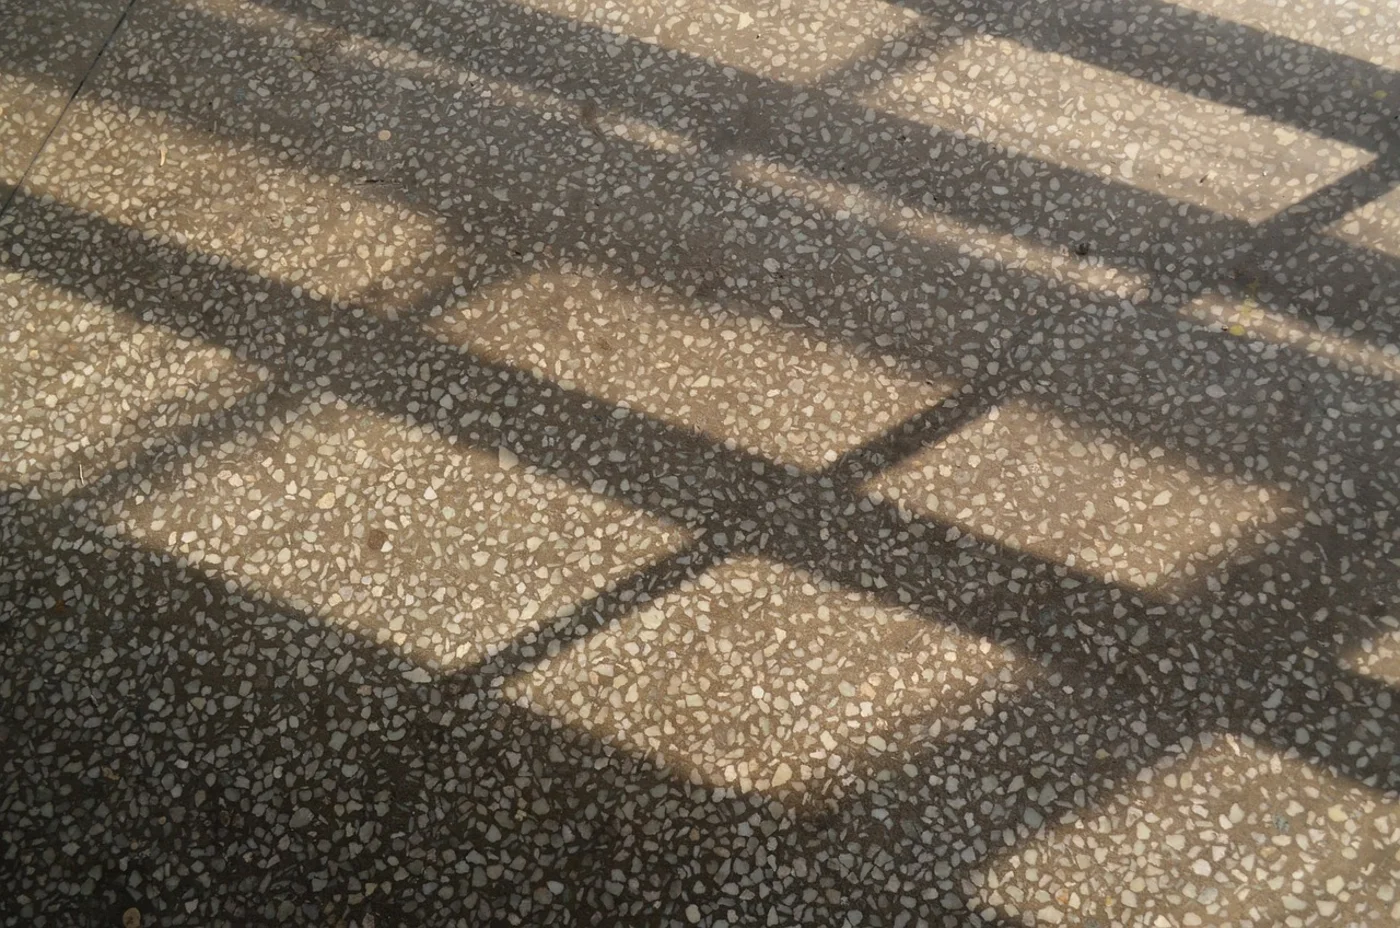 How to deep clean terrazzo floors quickly. A grey terrazzo floor.